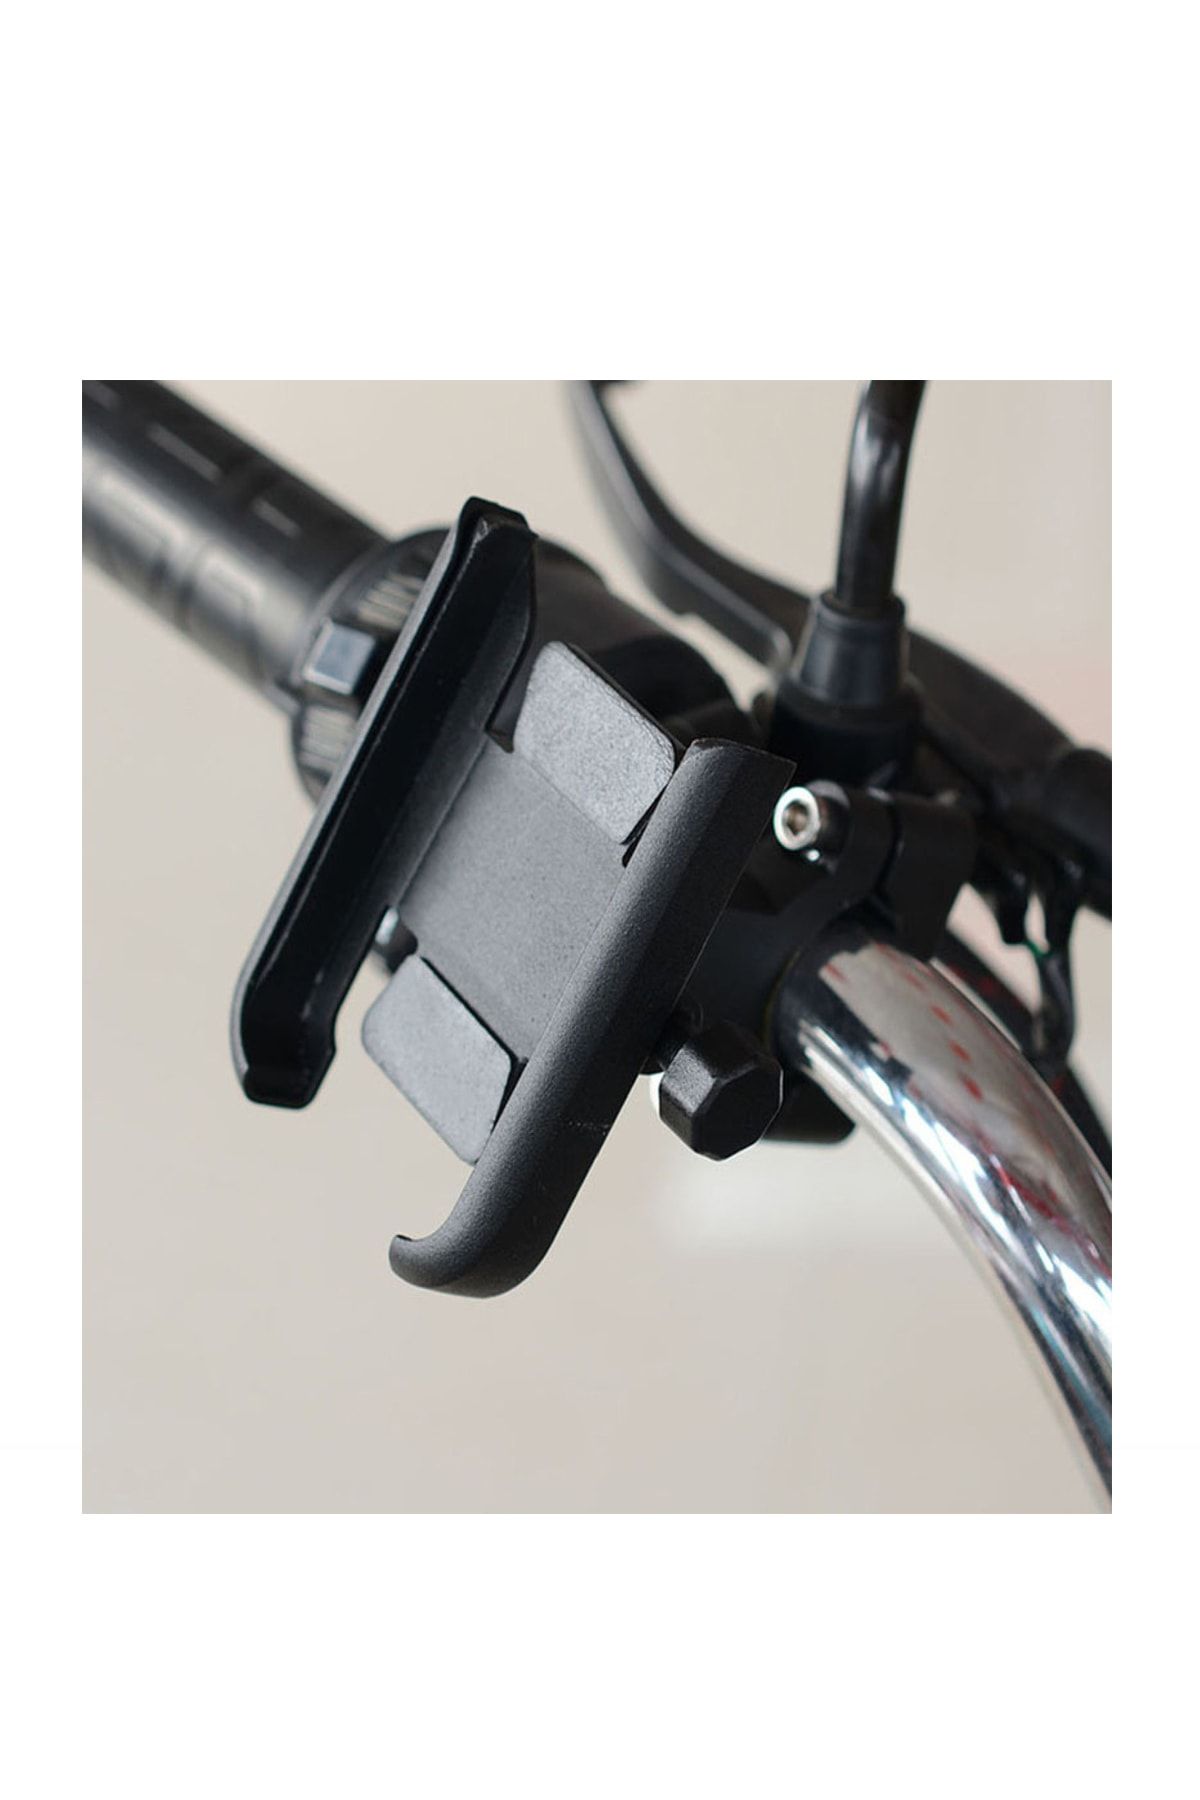 Powertec Gidon Bağlantılı Alüminyum Gövdeli Motosiklet-bisiklet Telefon Tutucu